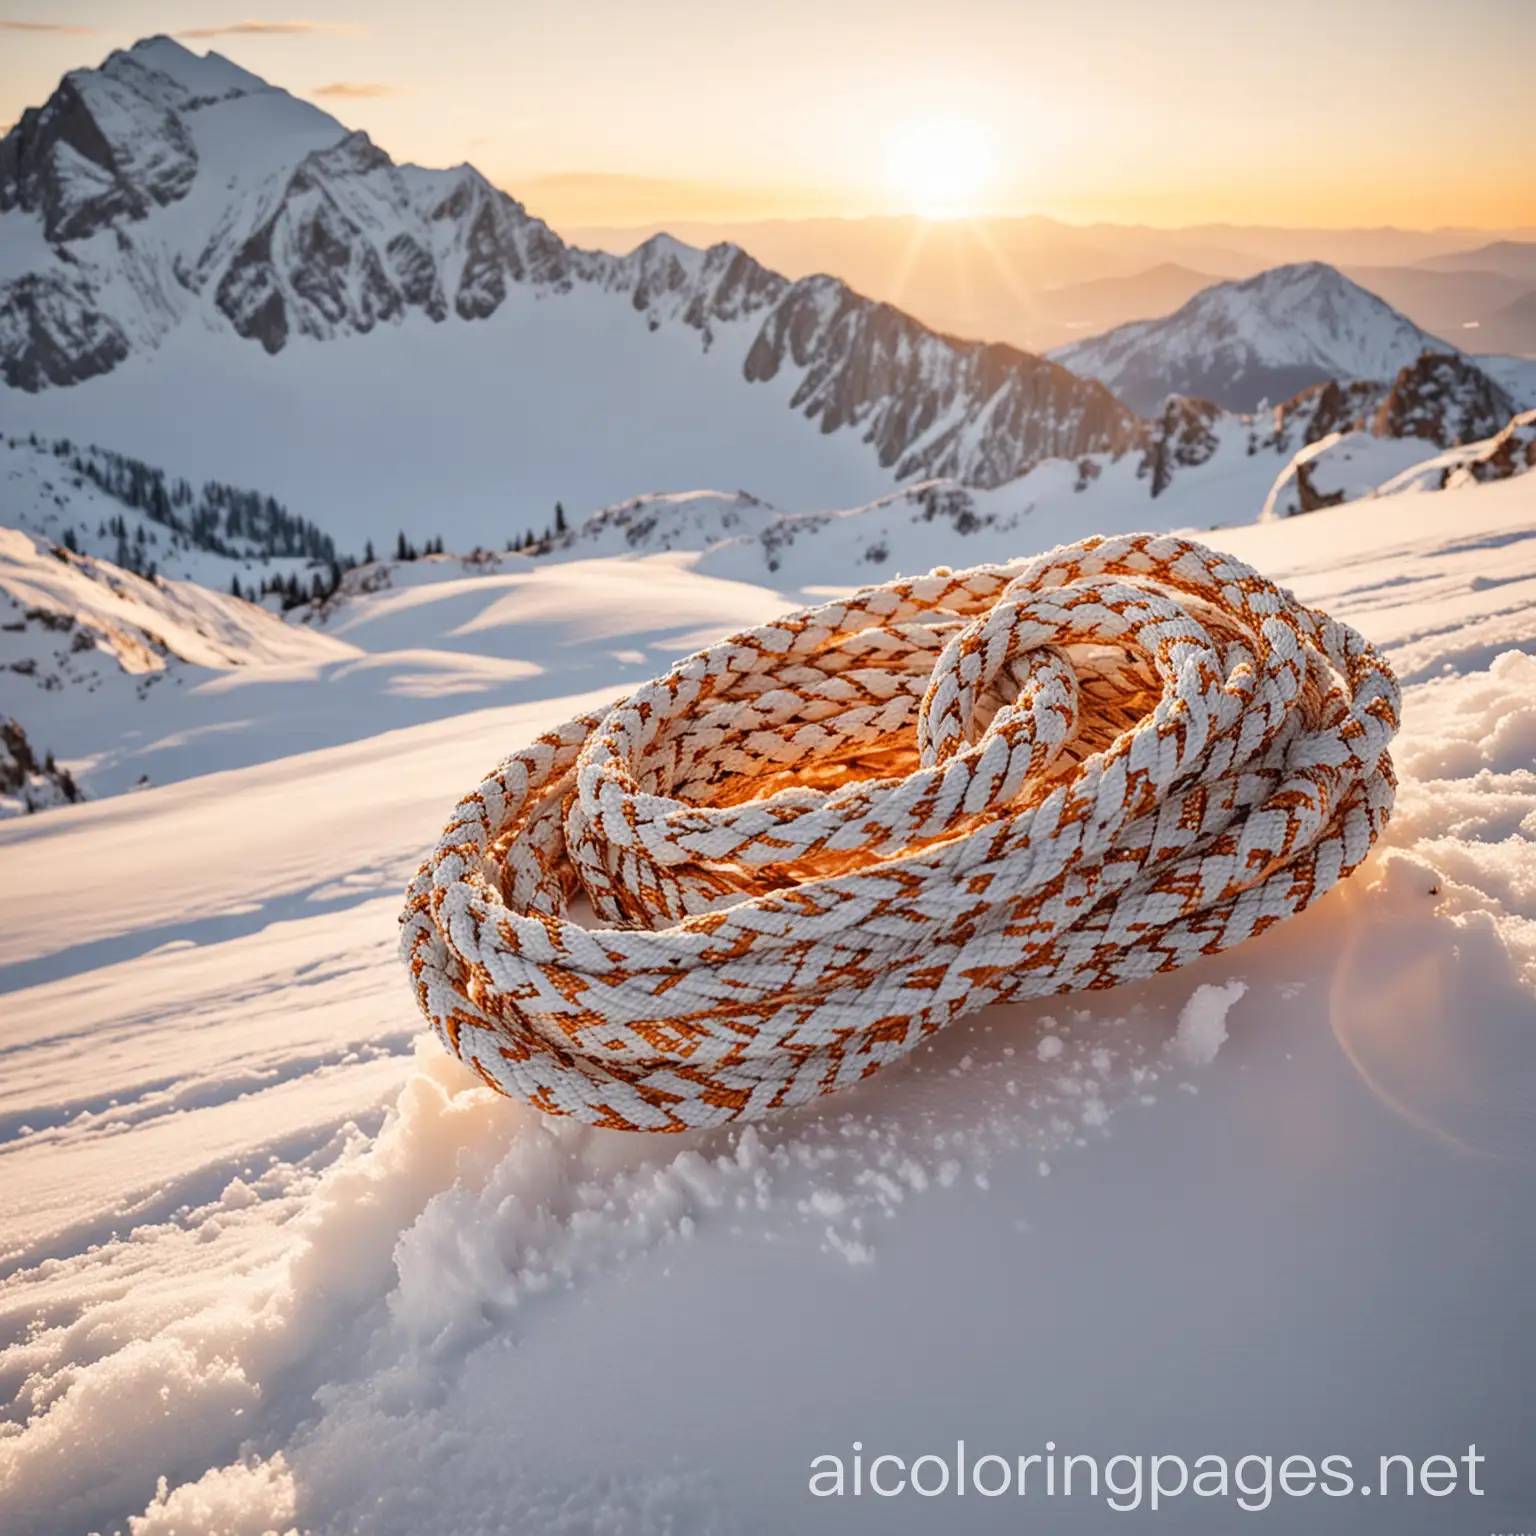 Ski-Ropes-Coiled-on-Snowy-Mountain-Peak-at-Dawn